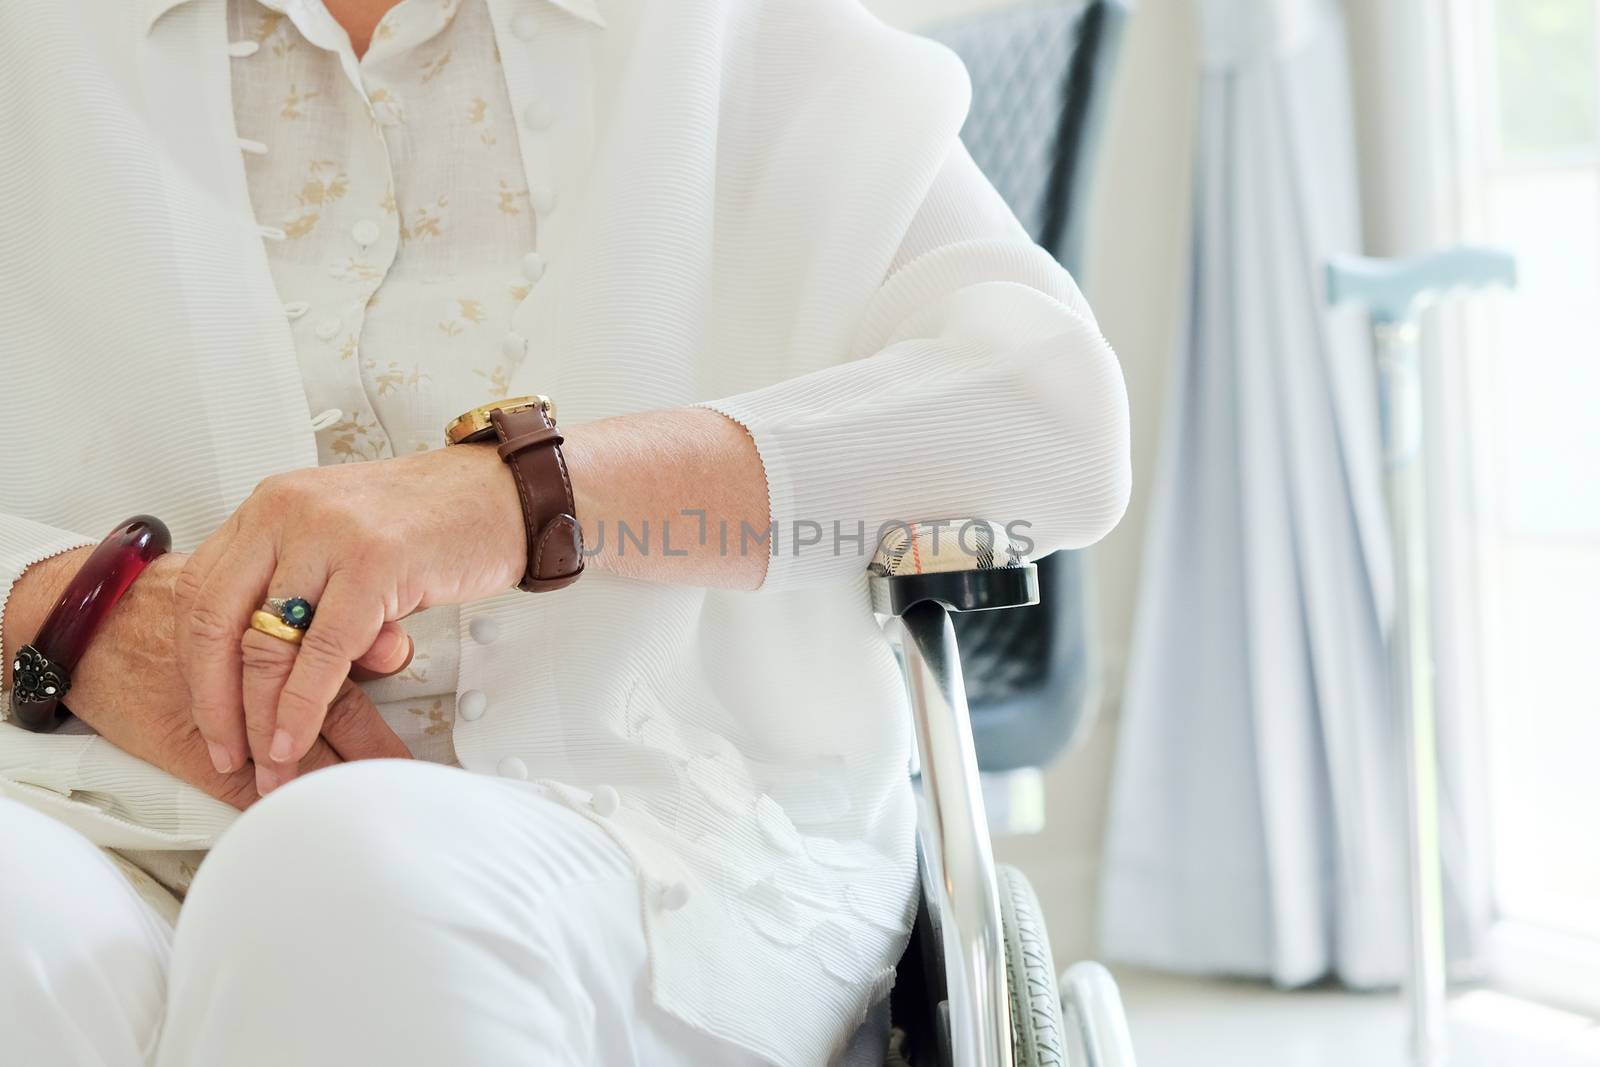 elderly woman in wheelchair